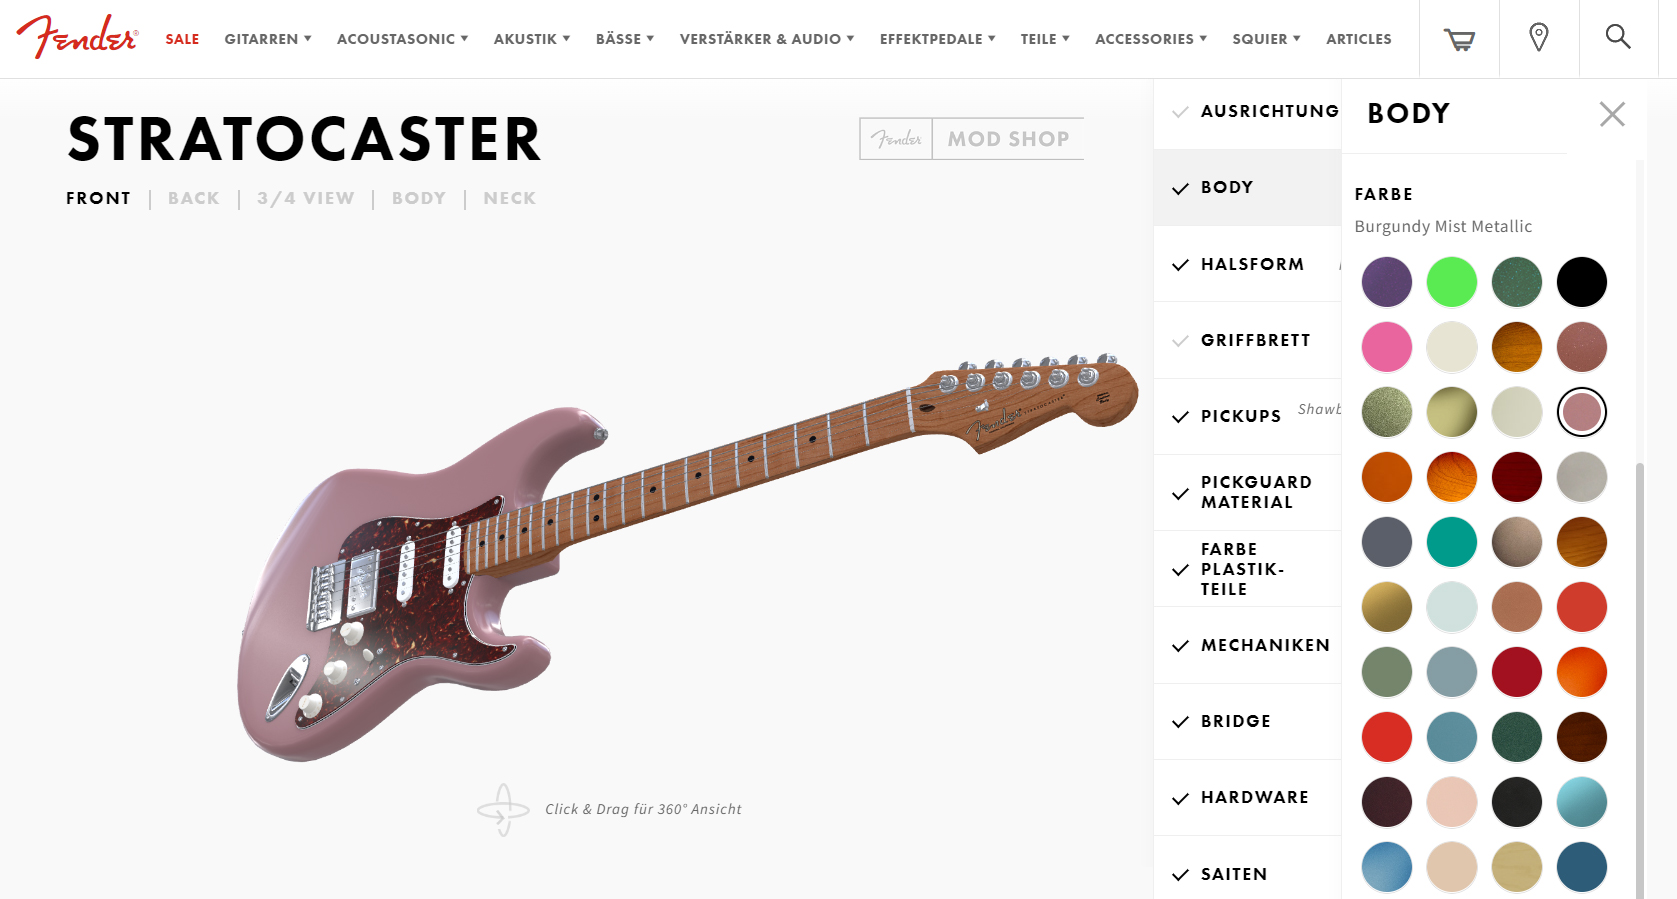 Entworfen von dir, gebaut von Fender: Fender Mod Shop jetzt auch